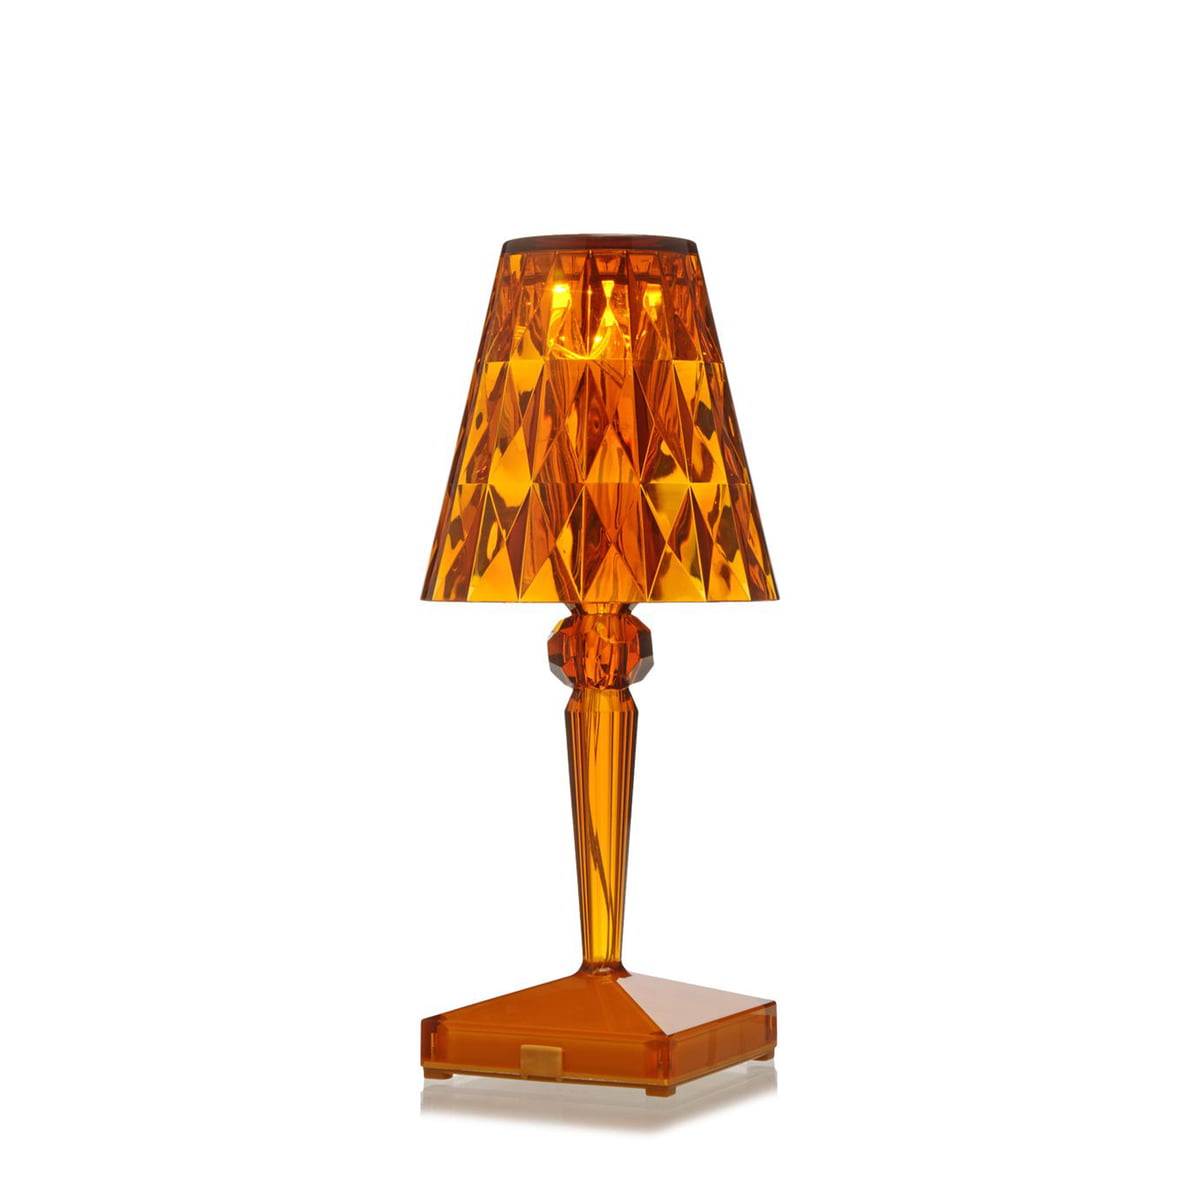 Lampe de table sans fil pied en acier Lampe de Chevet 8 couleurs